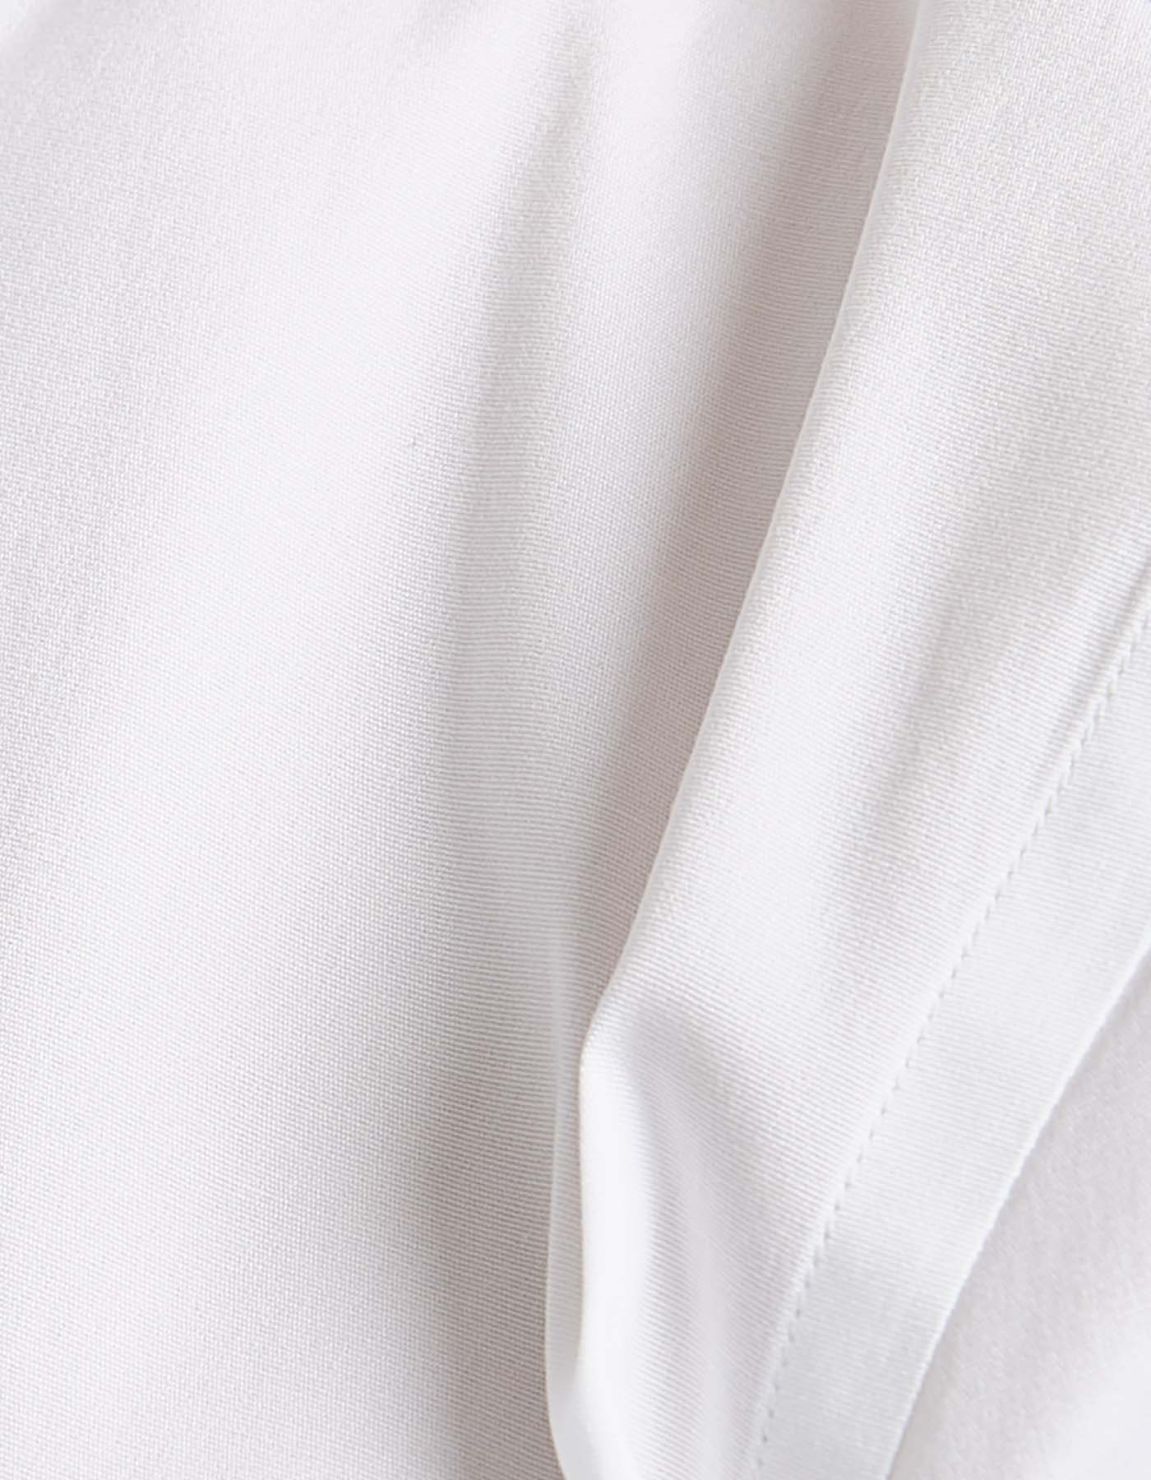 Camisa Cuello francés Blanco Tela Liso Slim Fit 2